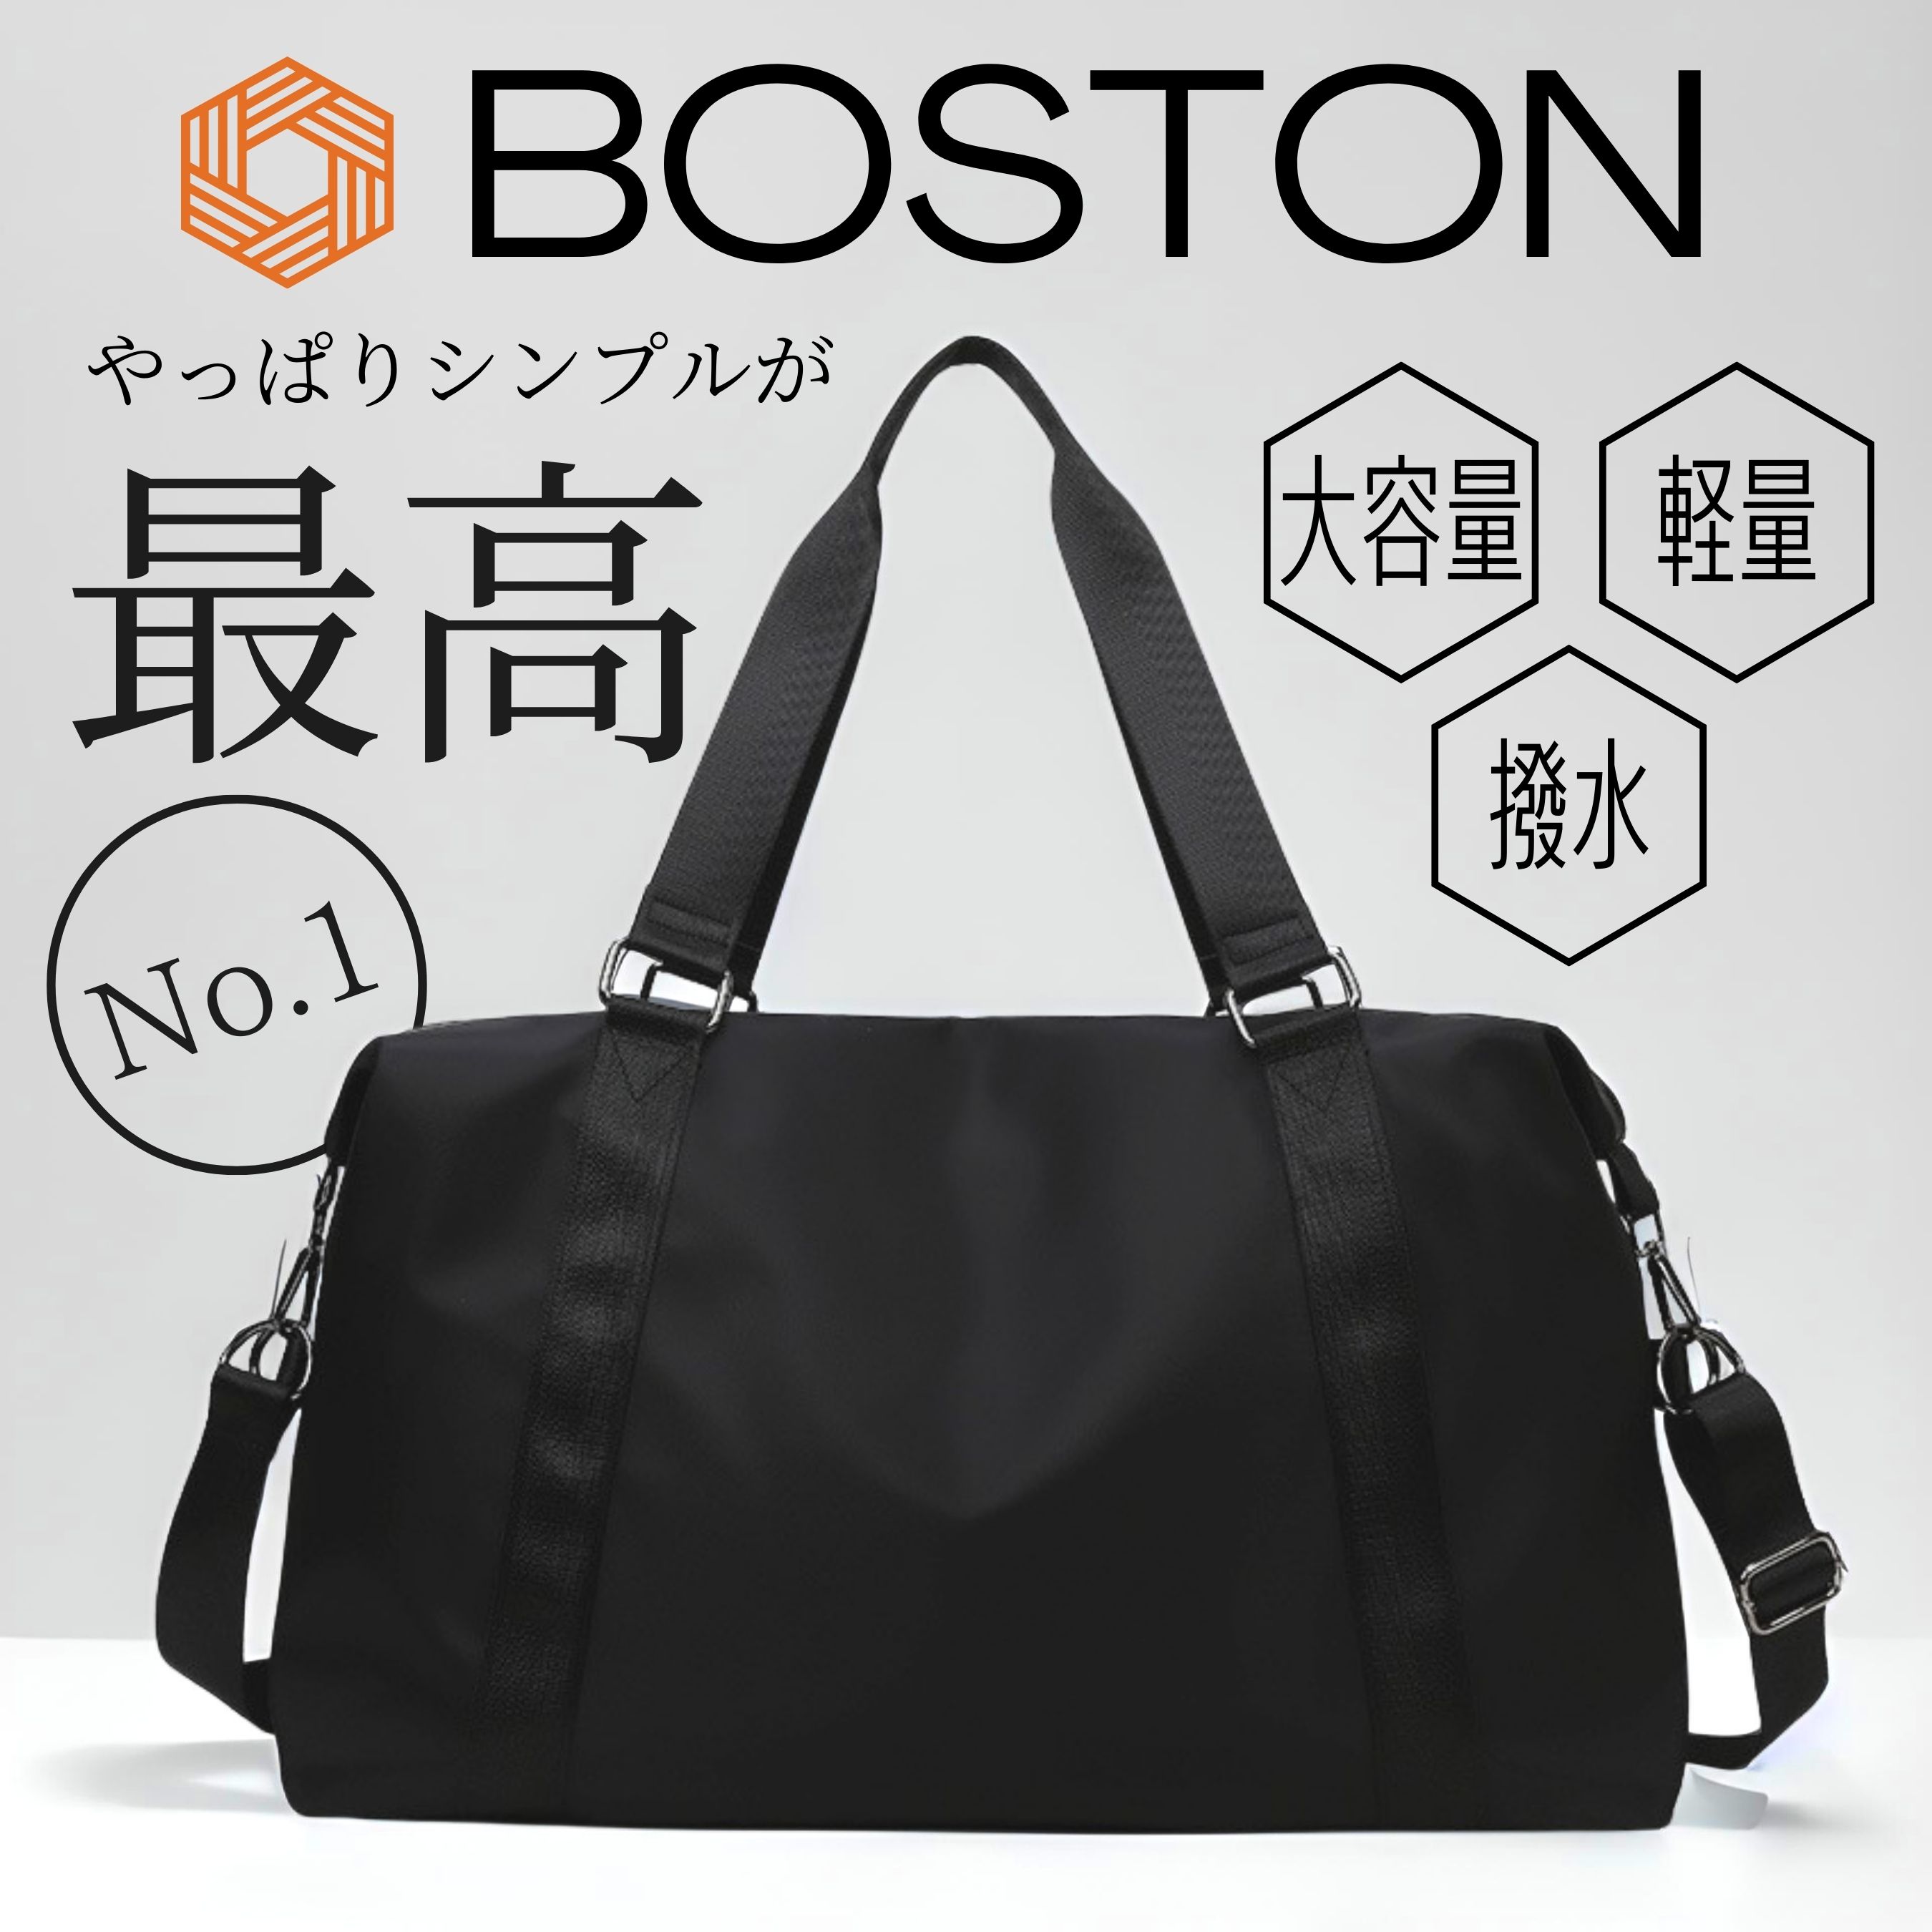  сумка "Boston bag" дорожная сумка женский мужской путешествие портфель Jim .. путешествие 1.2.3. большая вместимость легкий Golf спорт вспомогательный сумка 